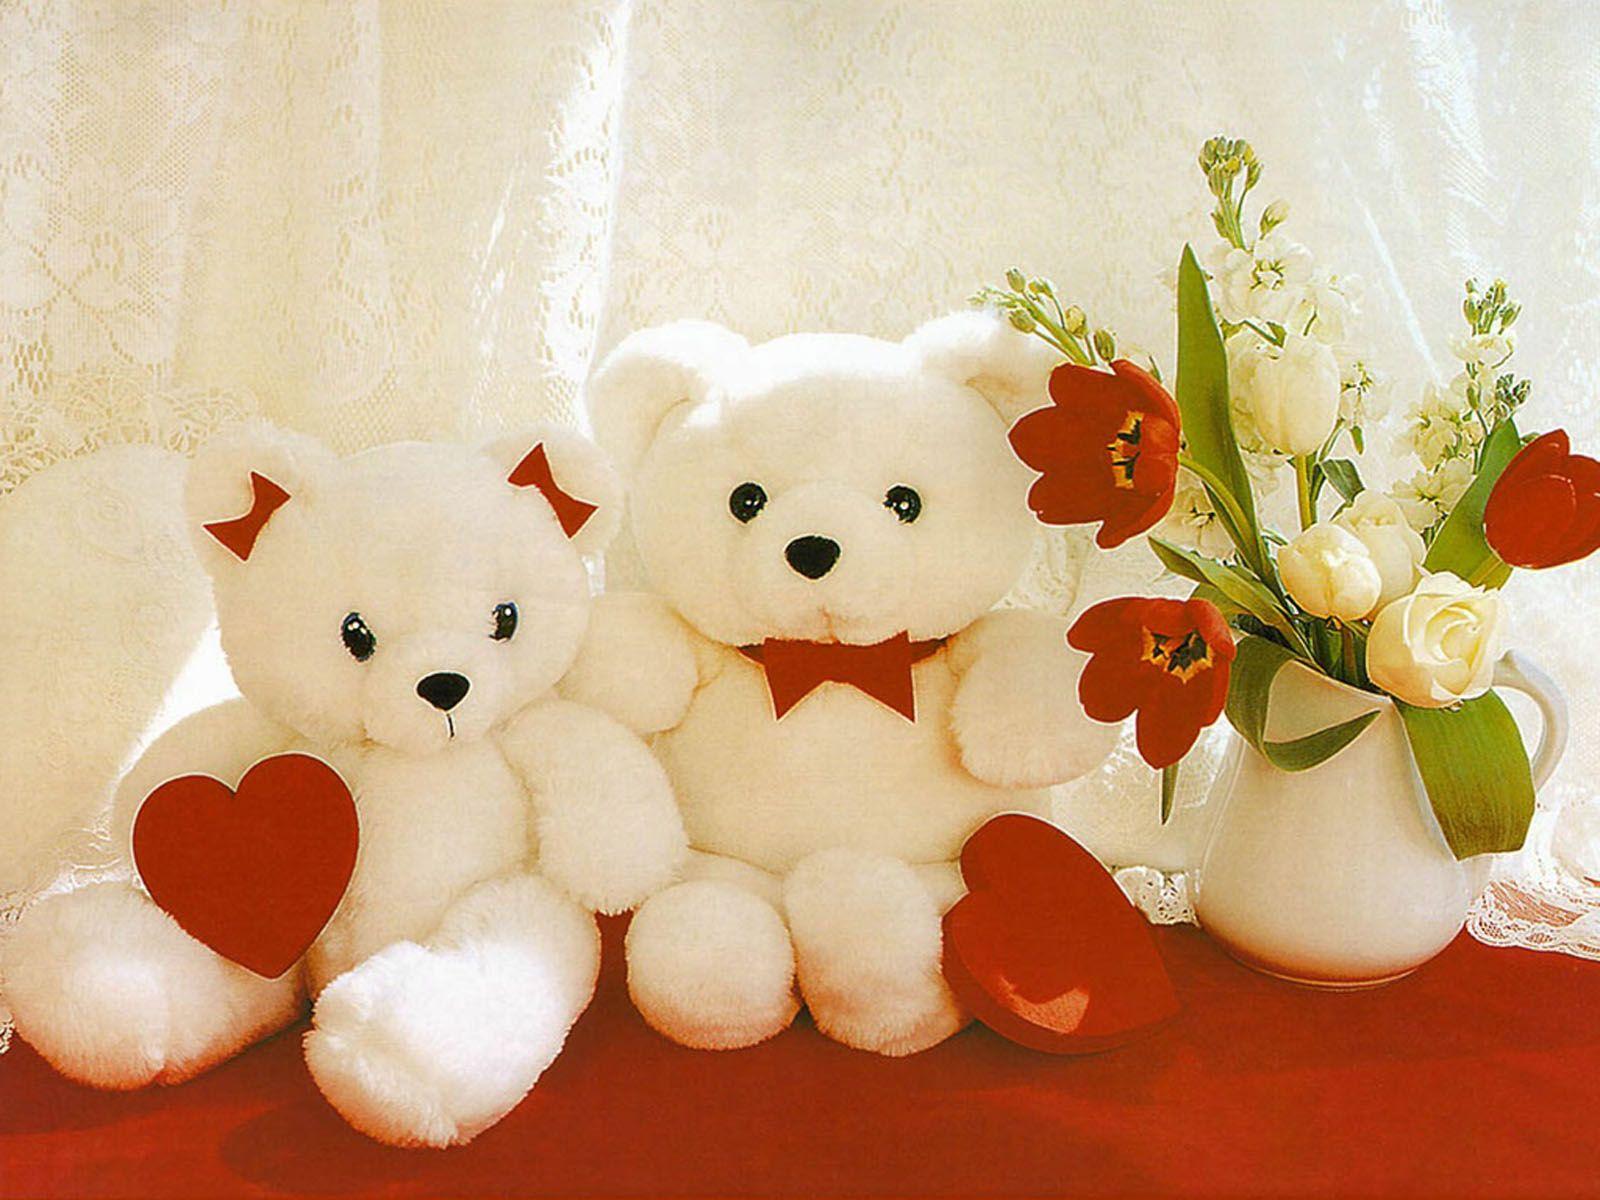 Cute teddy bear image. Have you seen our teddy bears?